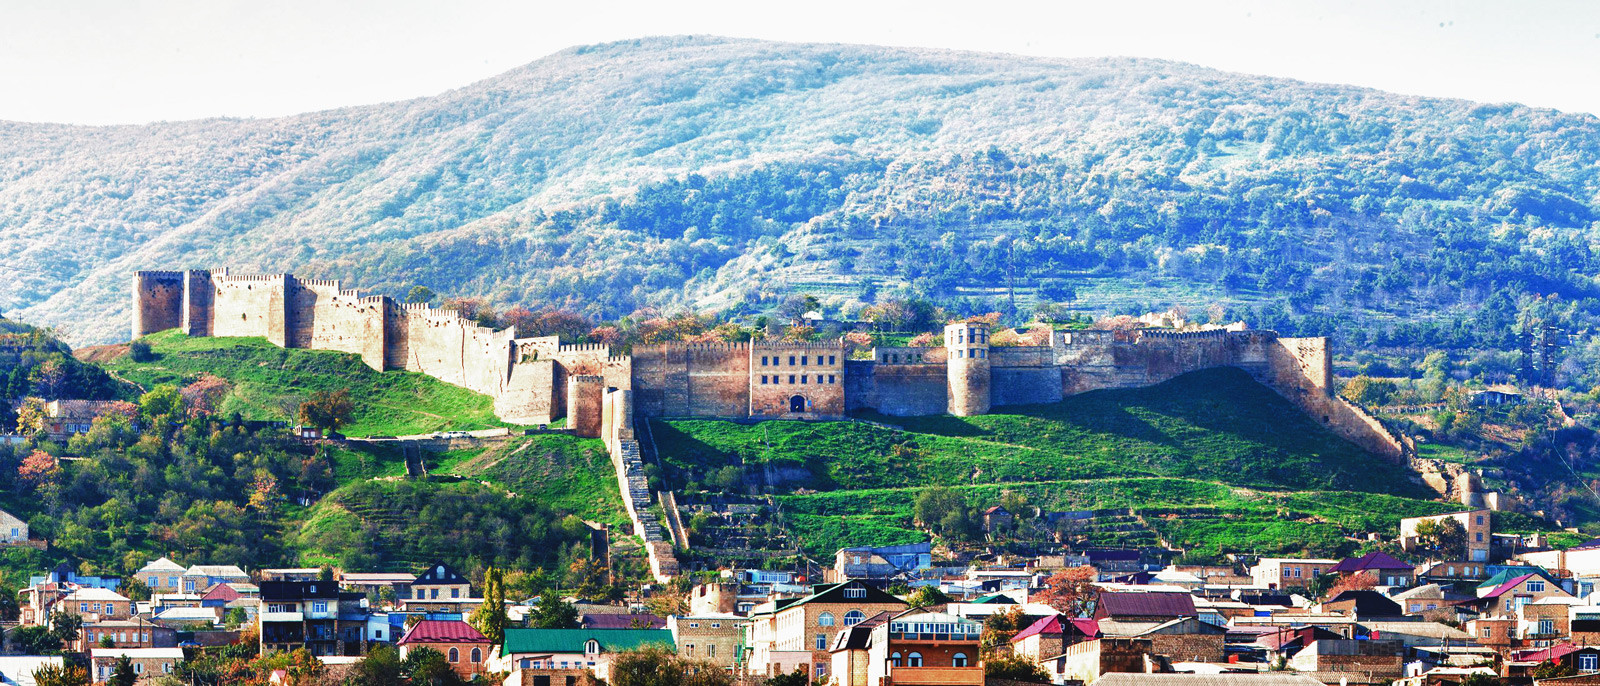 4. Замок в средневековой Румынии? Да нет же! Это крепость Нарын-кала в городе Дербент, Дагестан. россия, фото